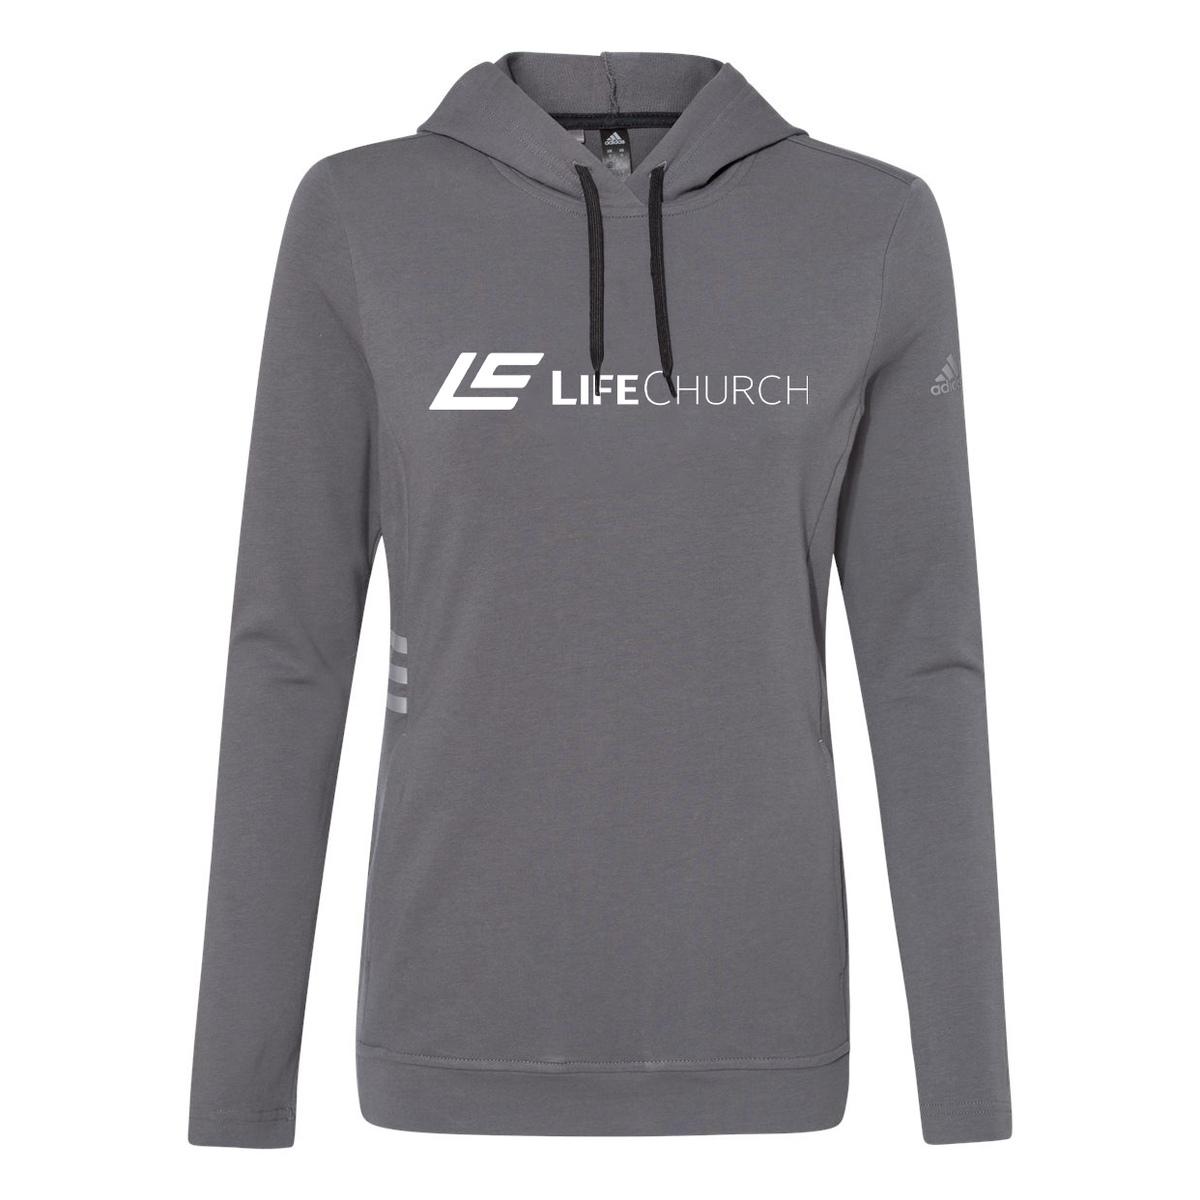 Life Church Adidas Women's Lightweight Quarter-Zip Pullover